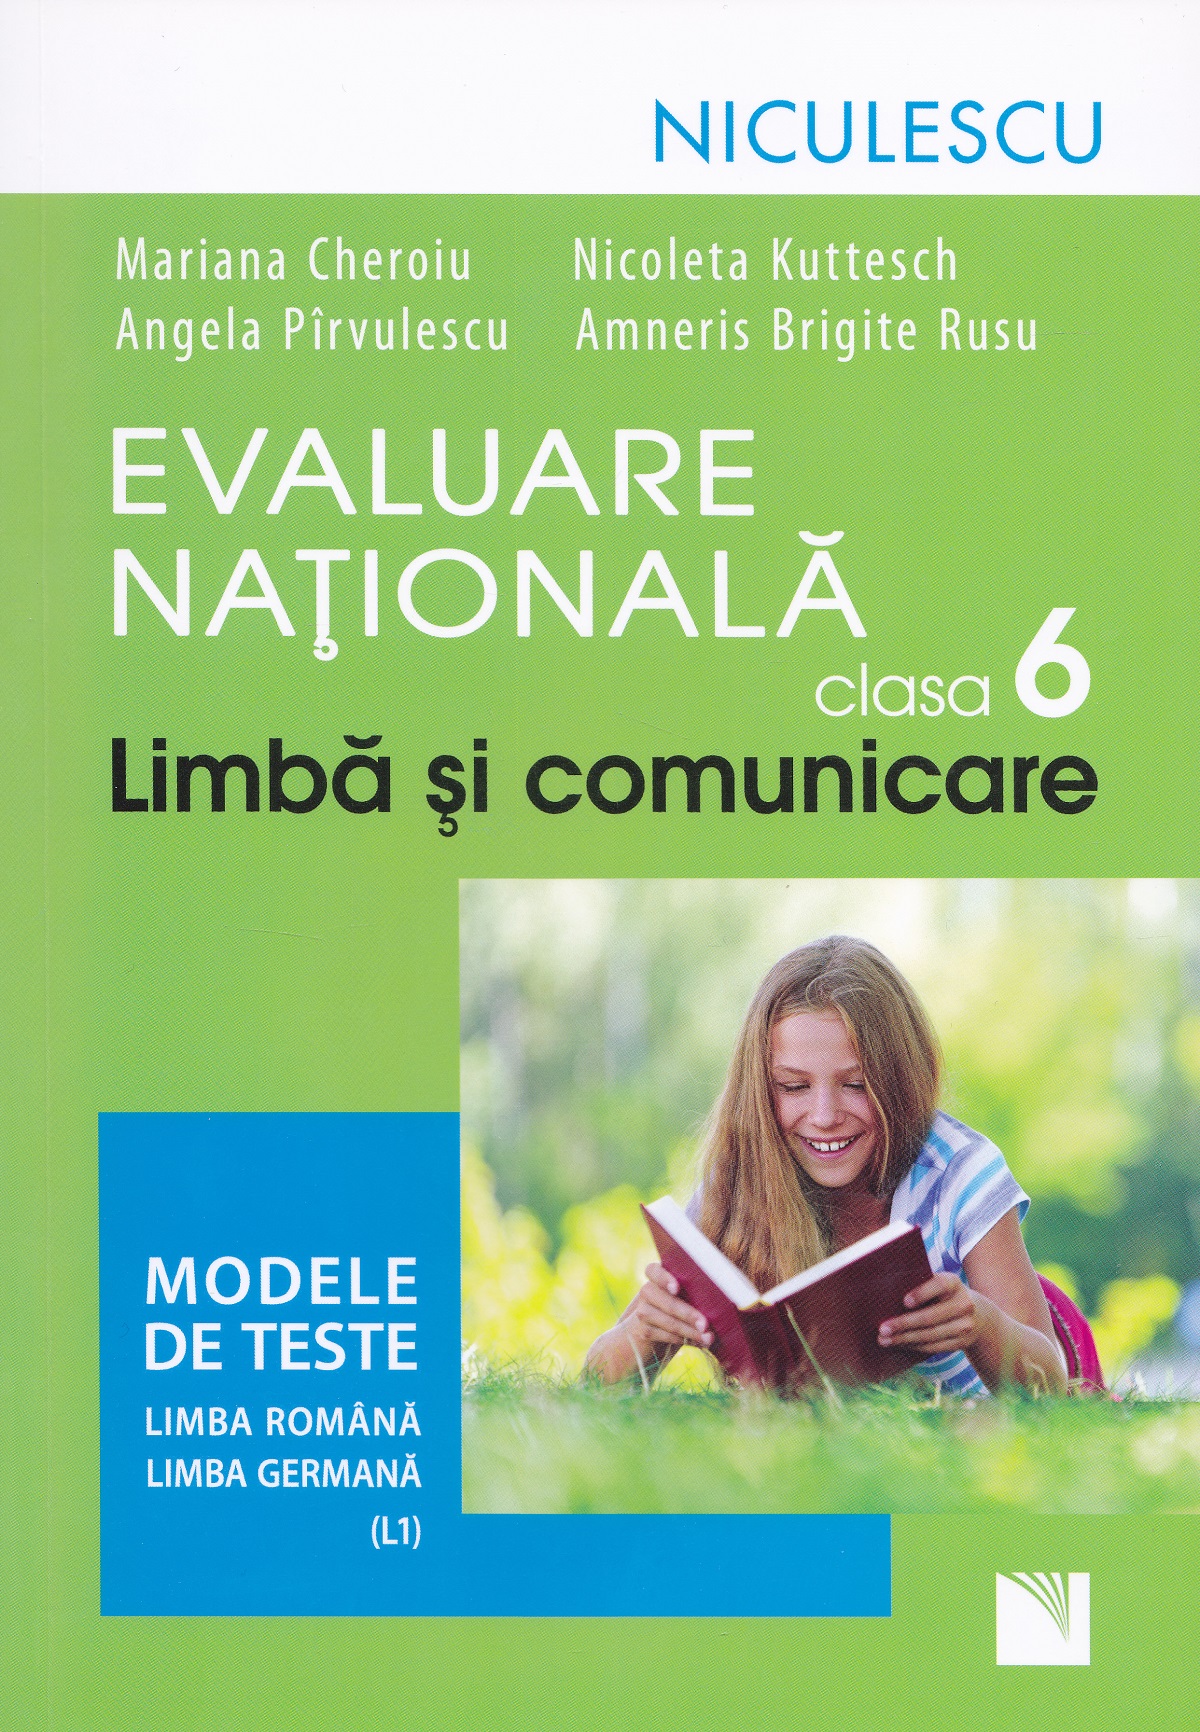 Limba si comunicare - Clasa 6 - Evaluare nationala - Mariana Cheroiu